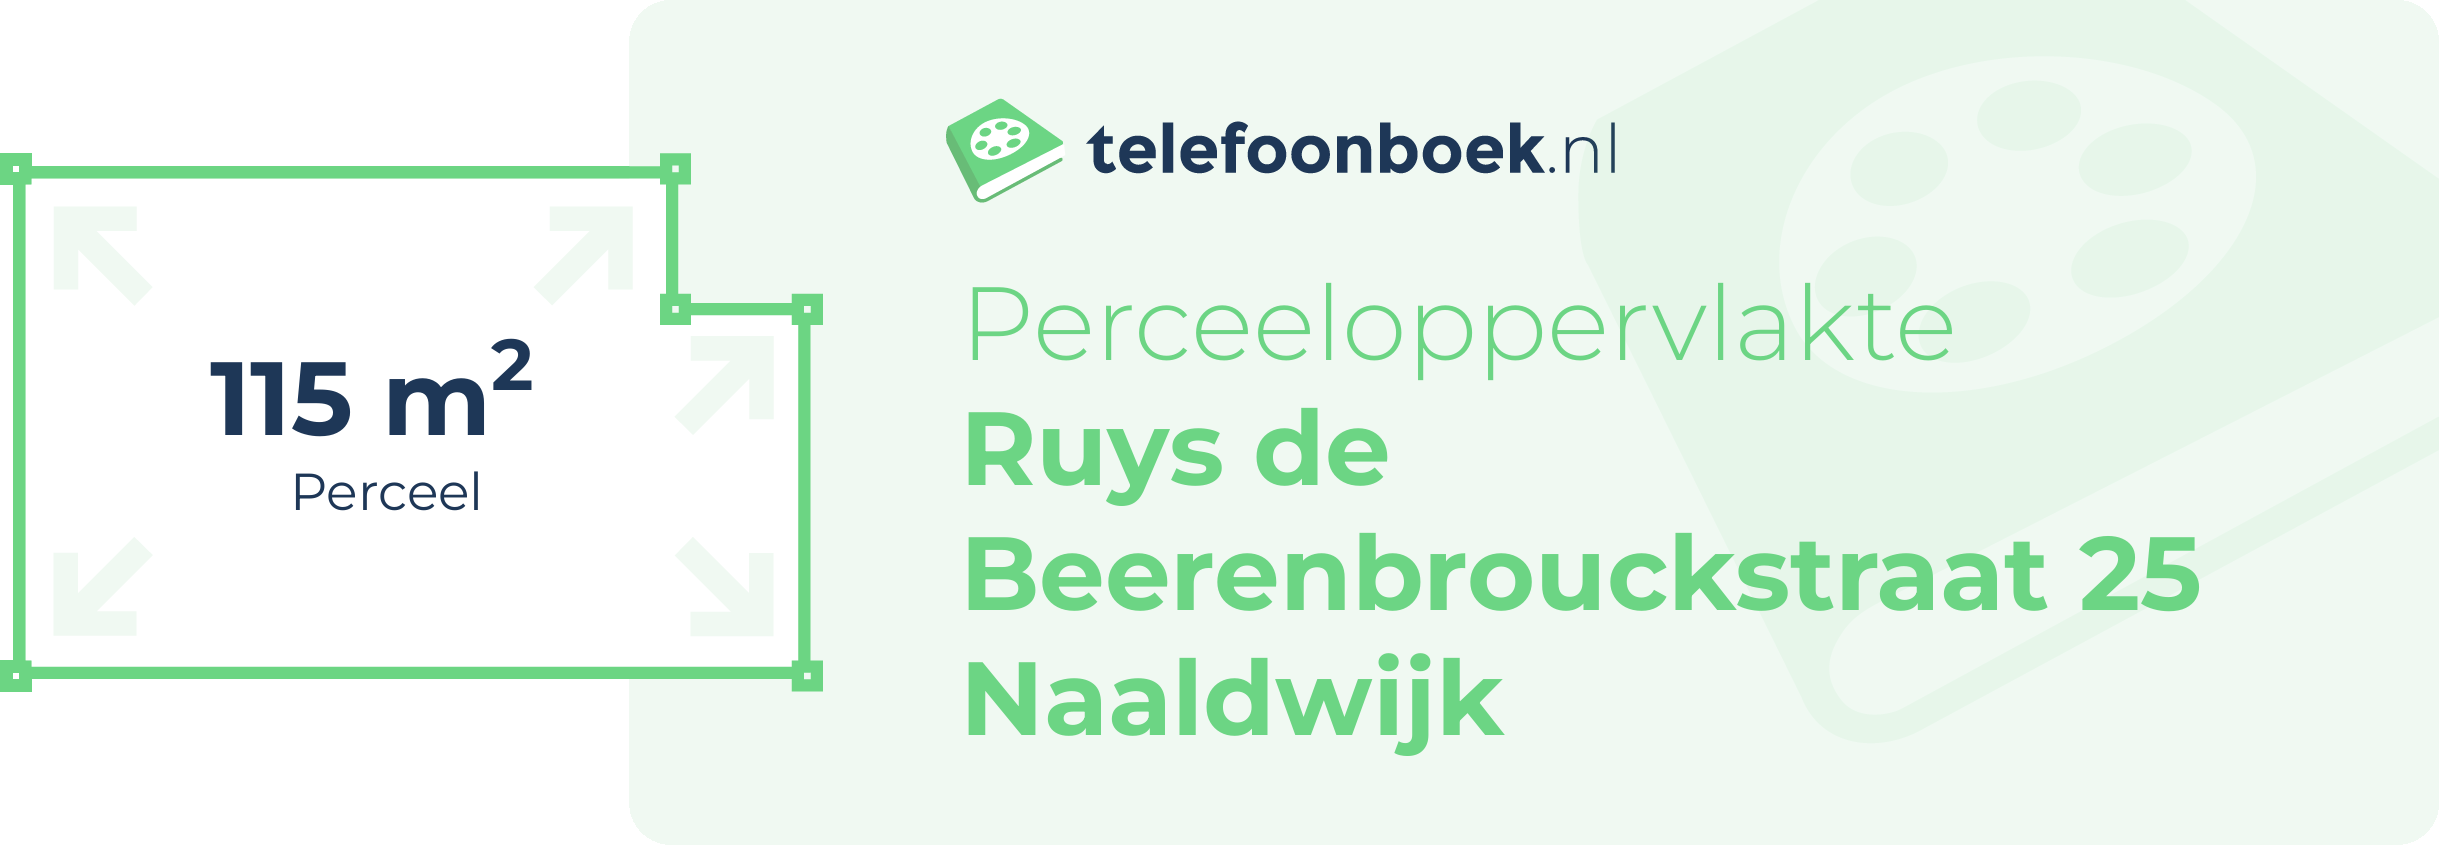 Perceeloppervlakte Ruys De Beerenbrouckstraat 25 Naaldwijk